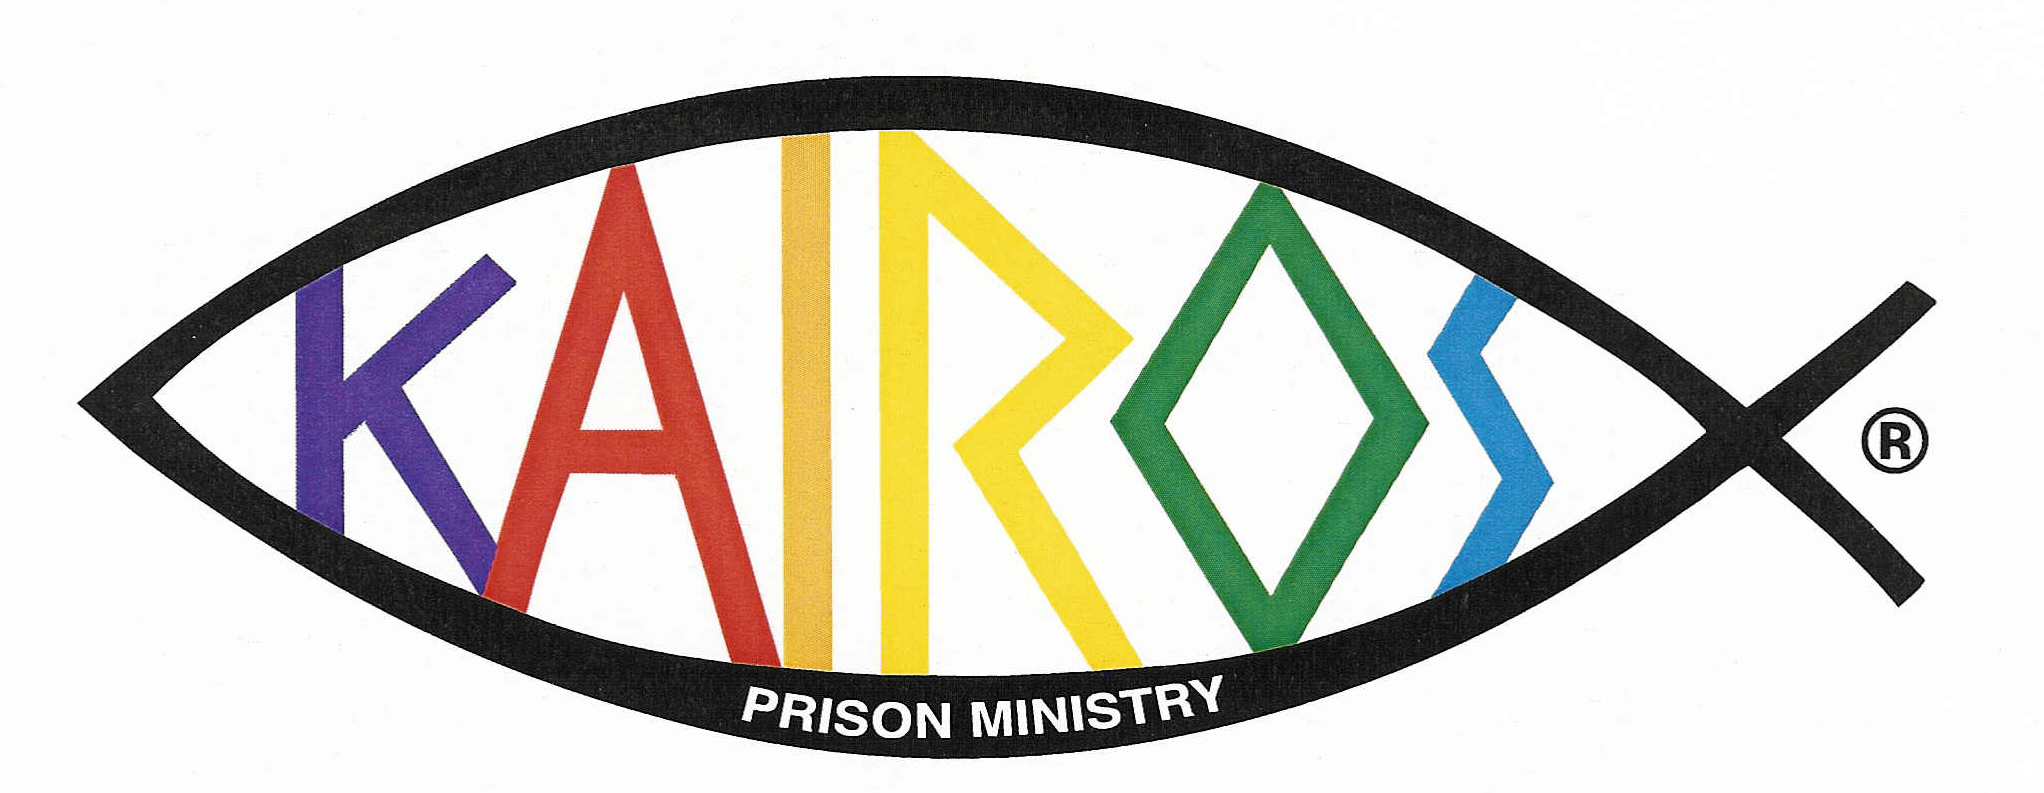 Kairos prison ministry